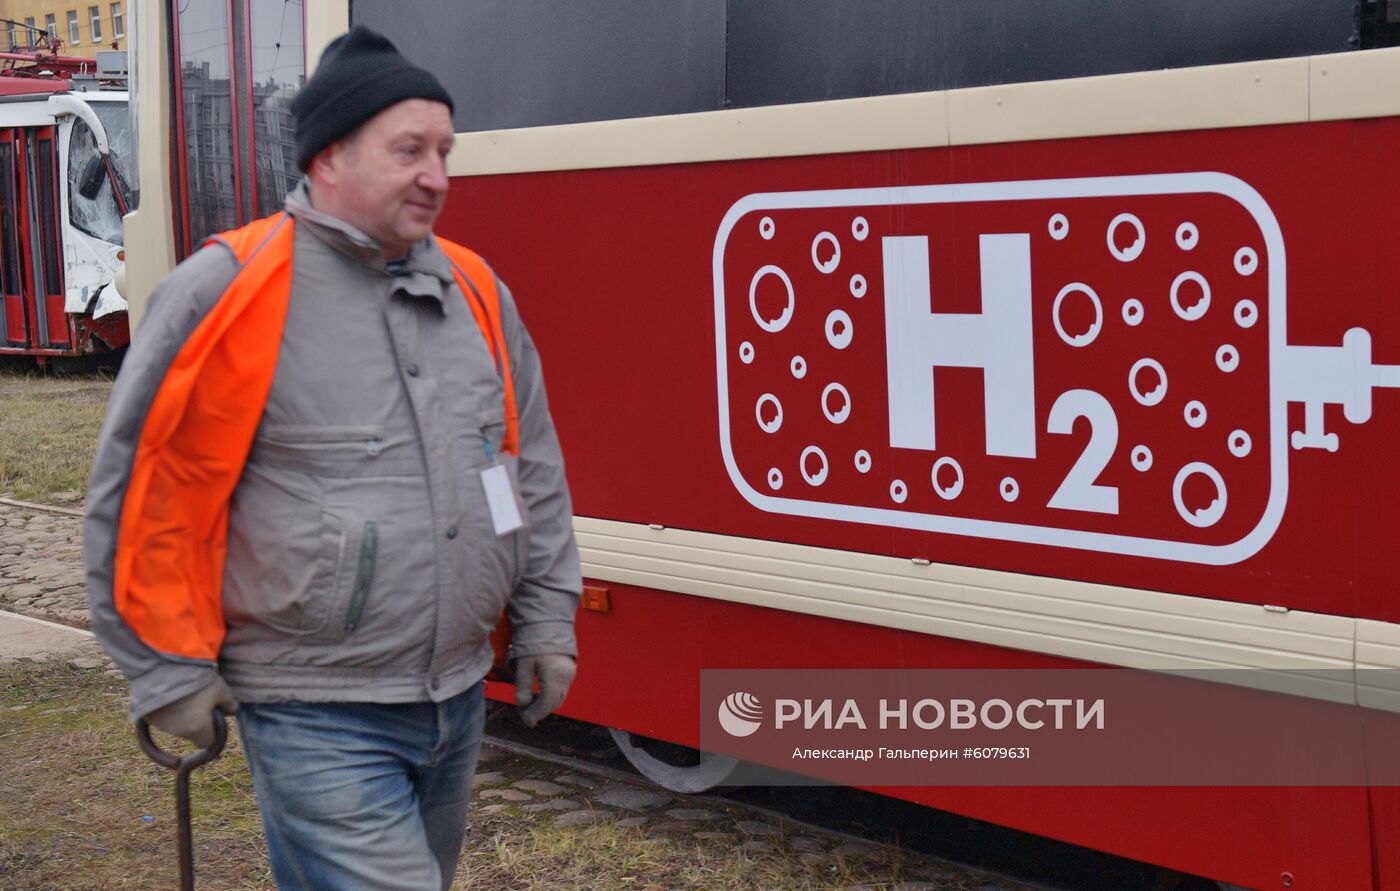 Трамвай на водородном топливе в Санкт-Петербурге